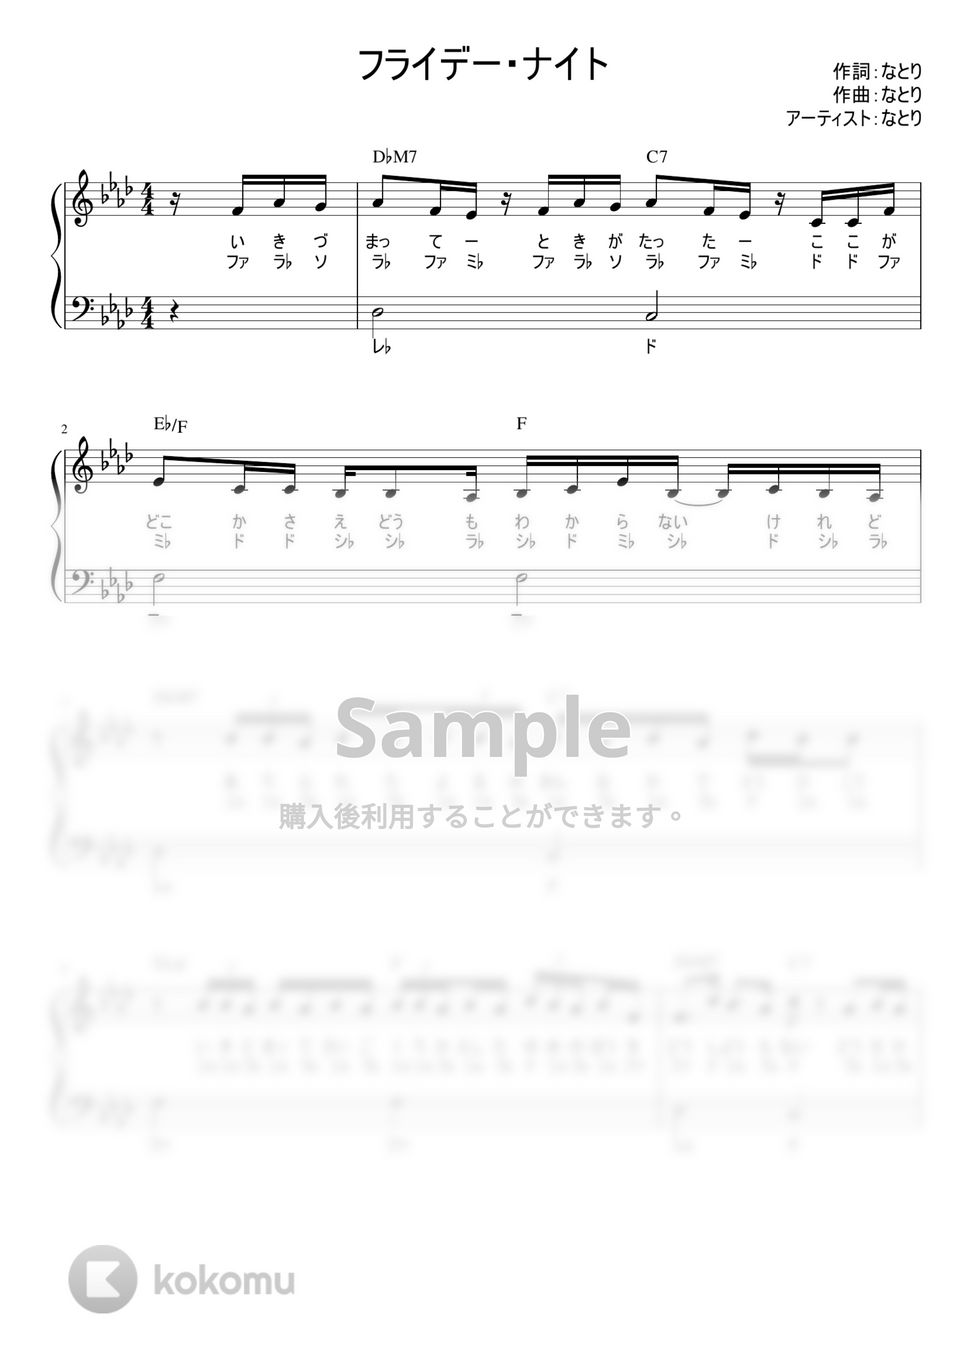 なとり - フライデー・ナイト (かんたん / 歌詞付き / ドレミ付き / 初心者) by piano.tokyo